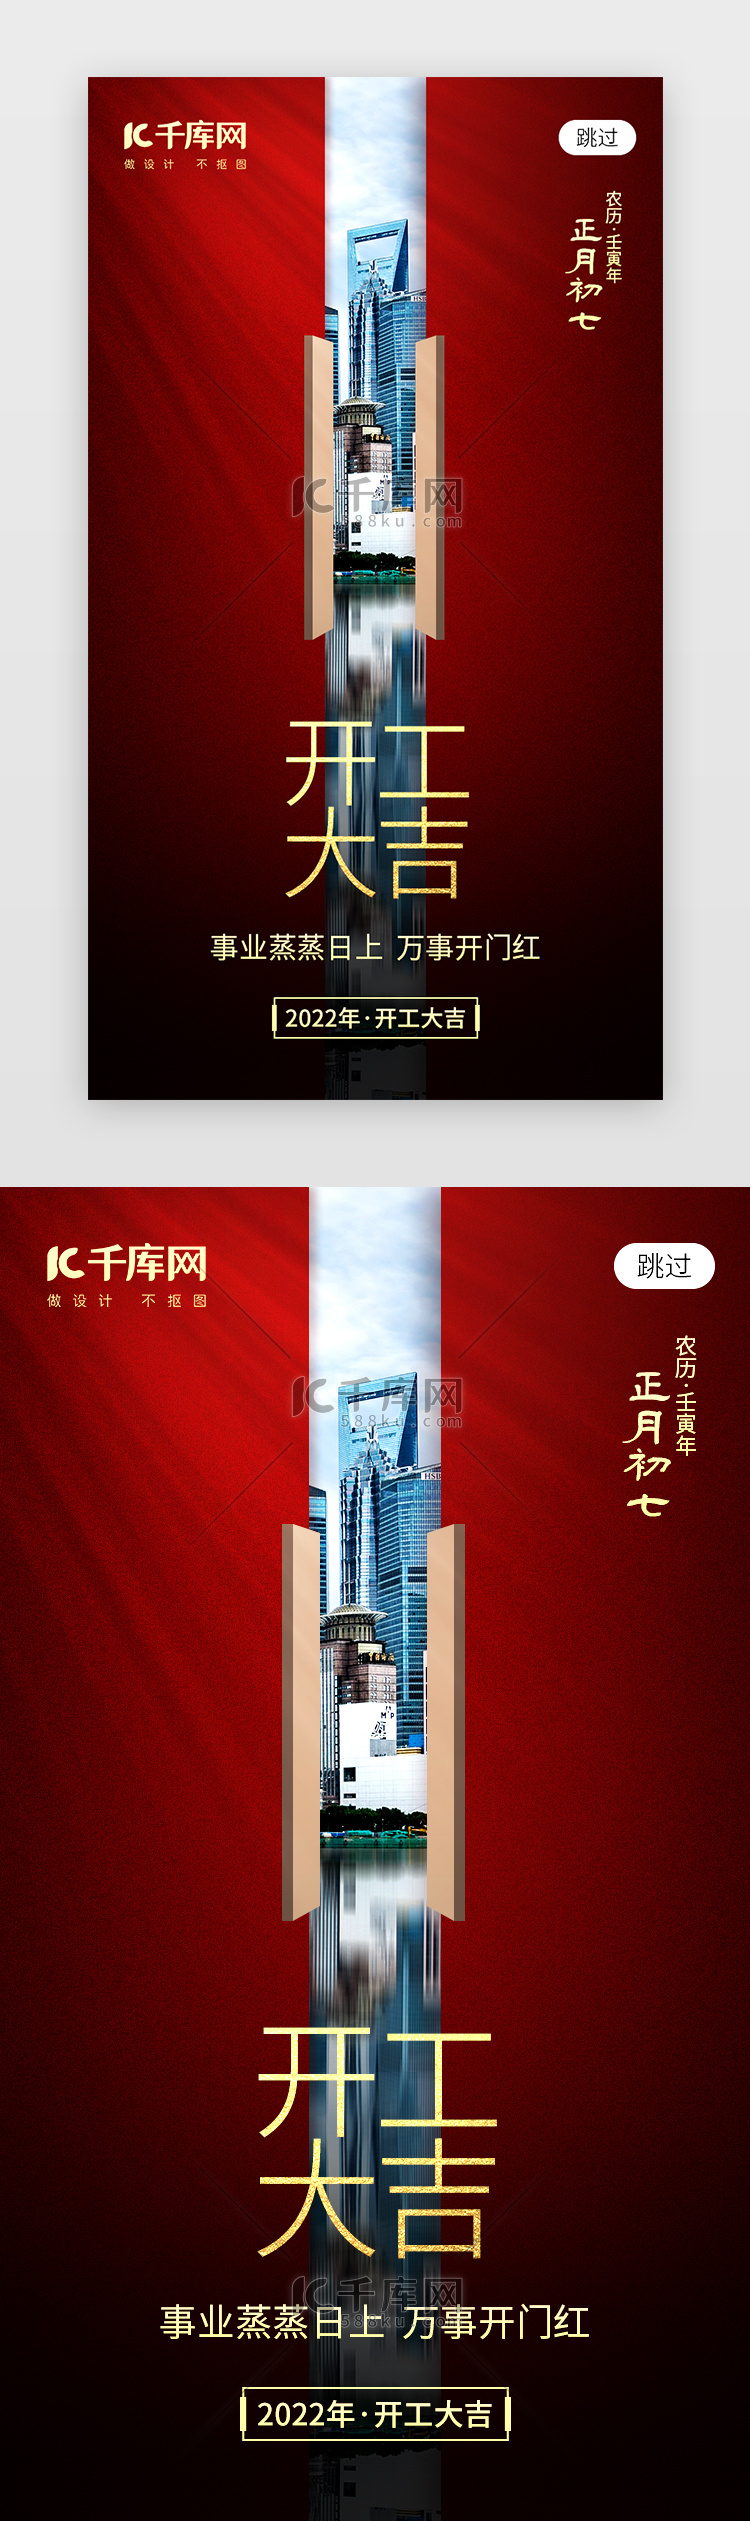 新年开工大吉app闪屏创意红色建筑